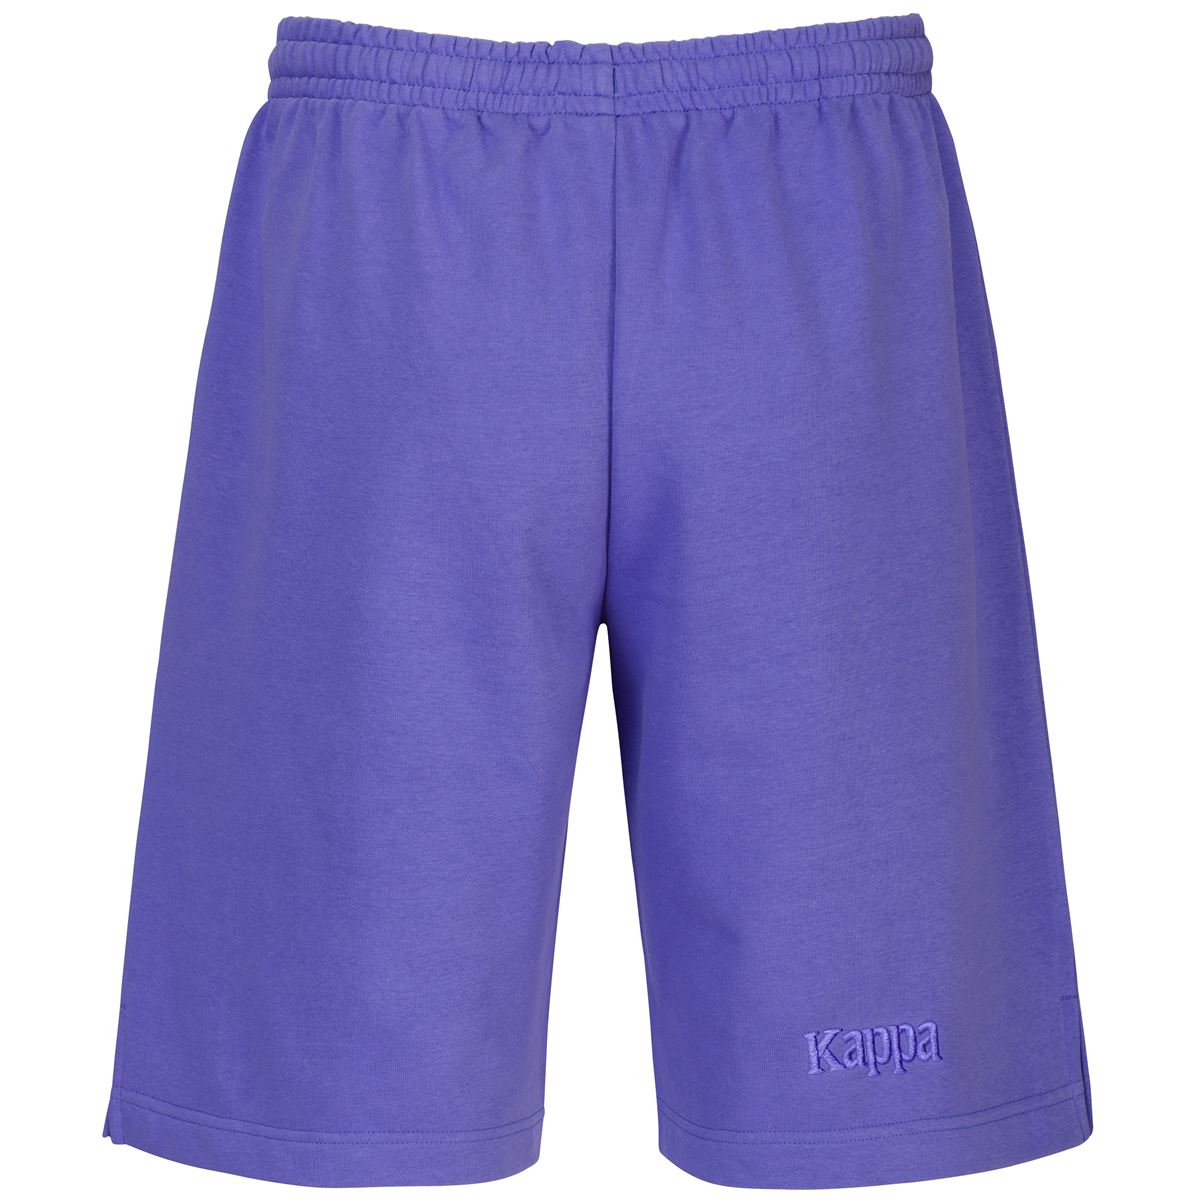 341678W T61 - Shorts - Kappa